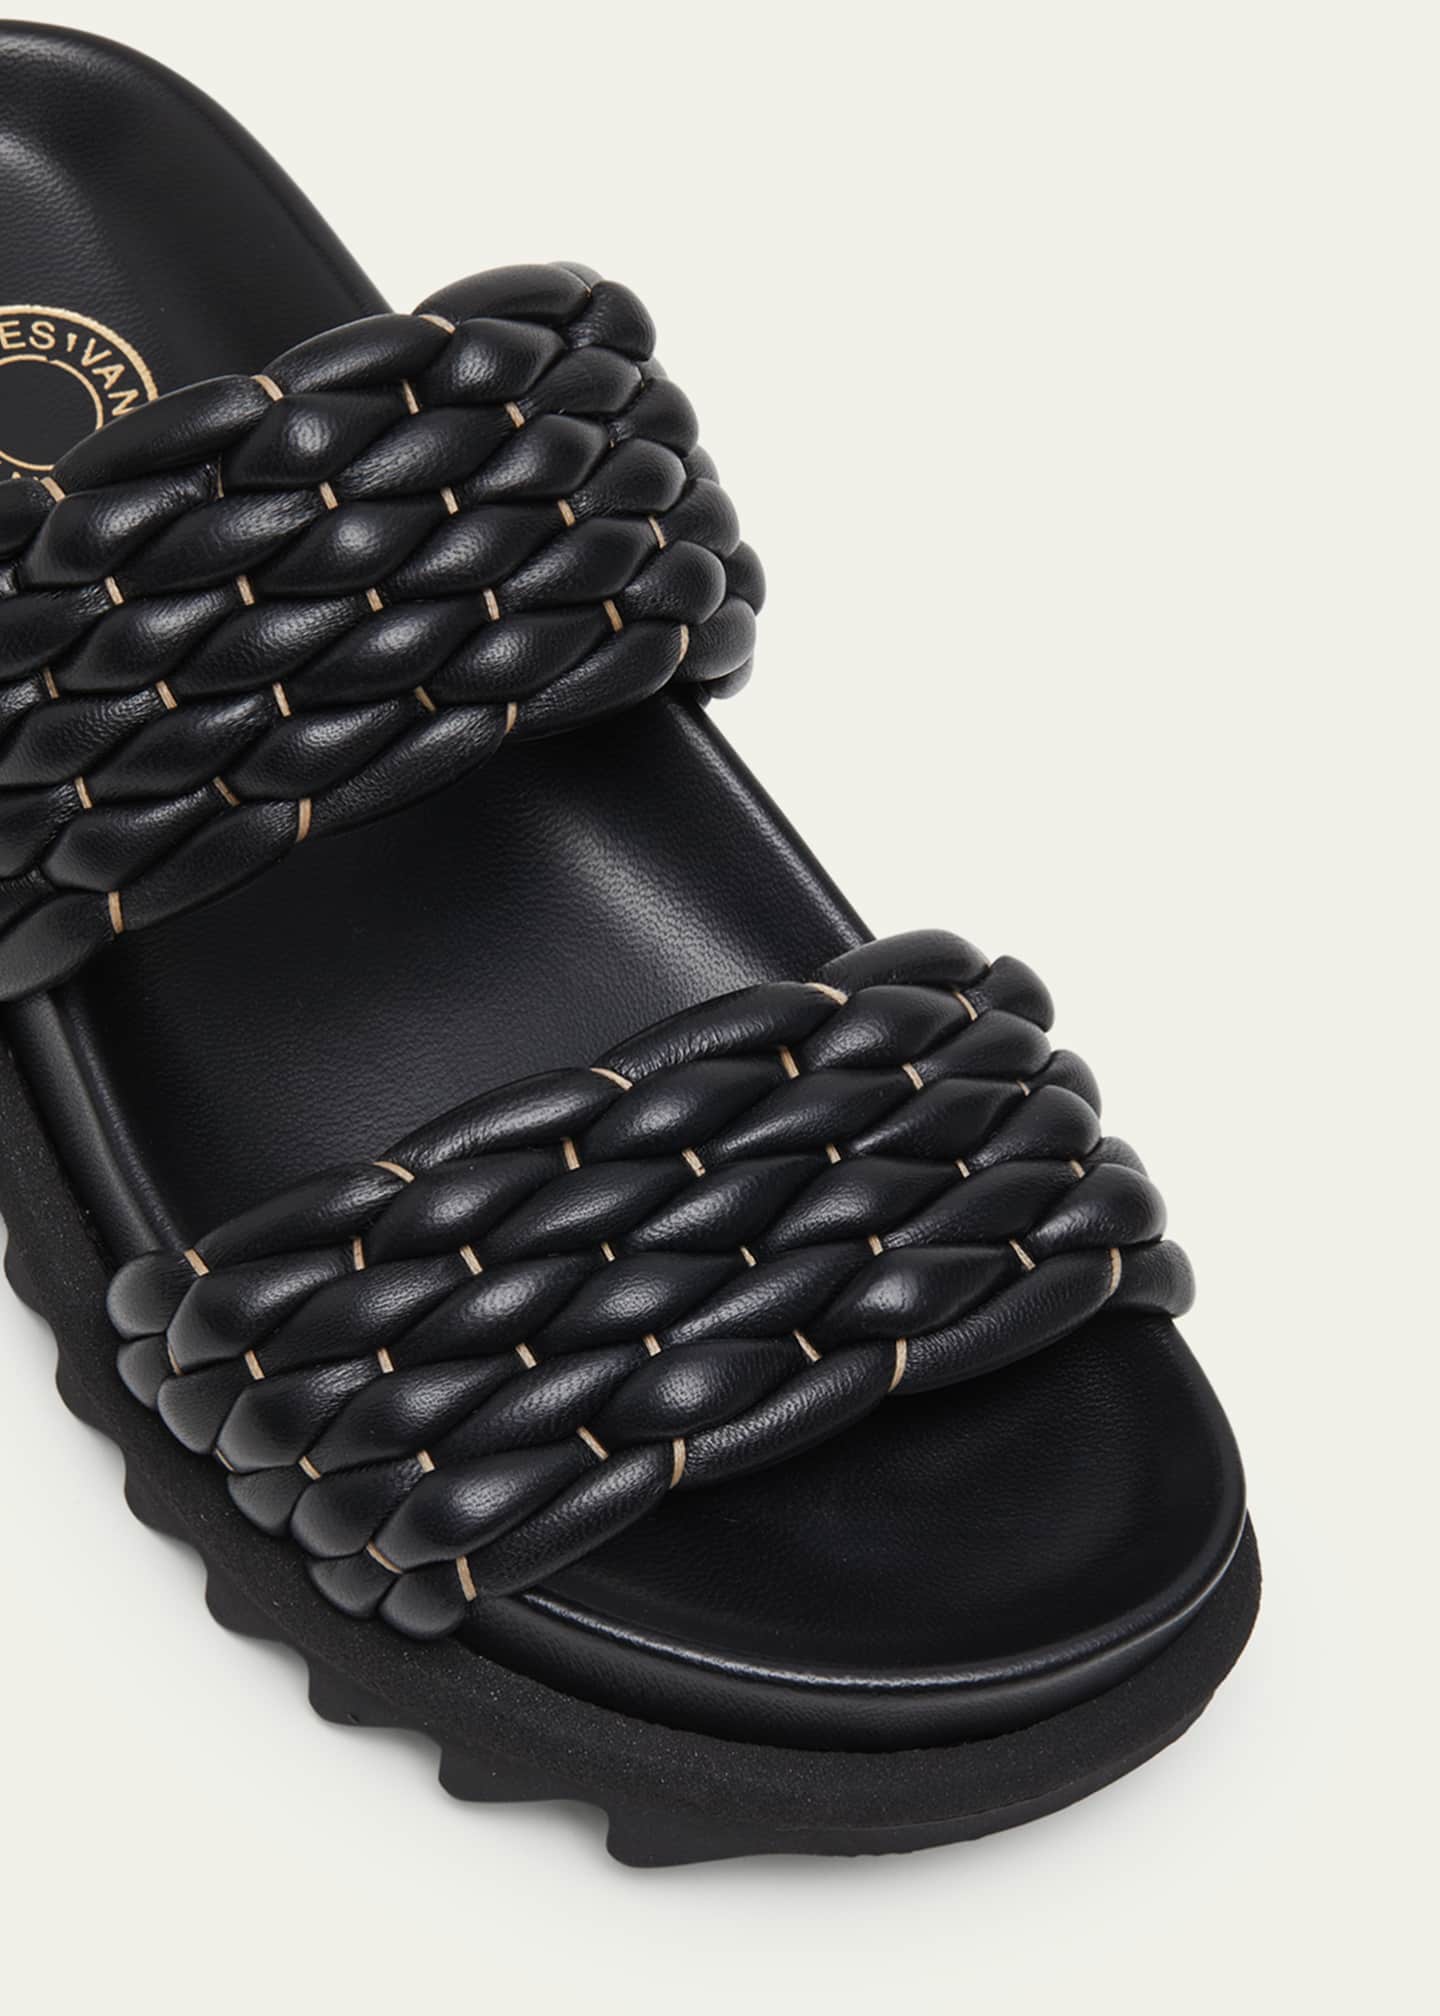 Dries Van Noten Woven Leather Dual-Band Comfort Sandals - Bergdorf Goodman